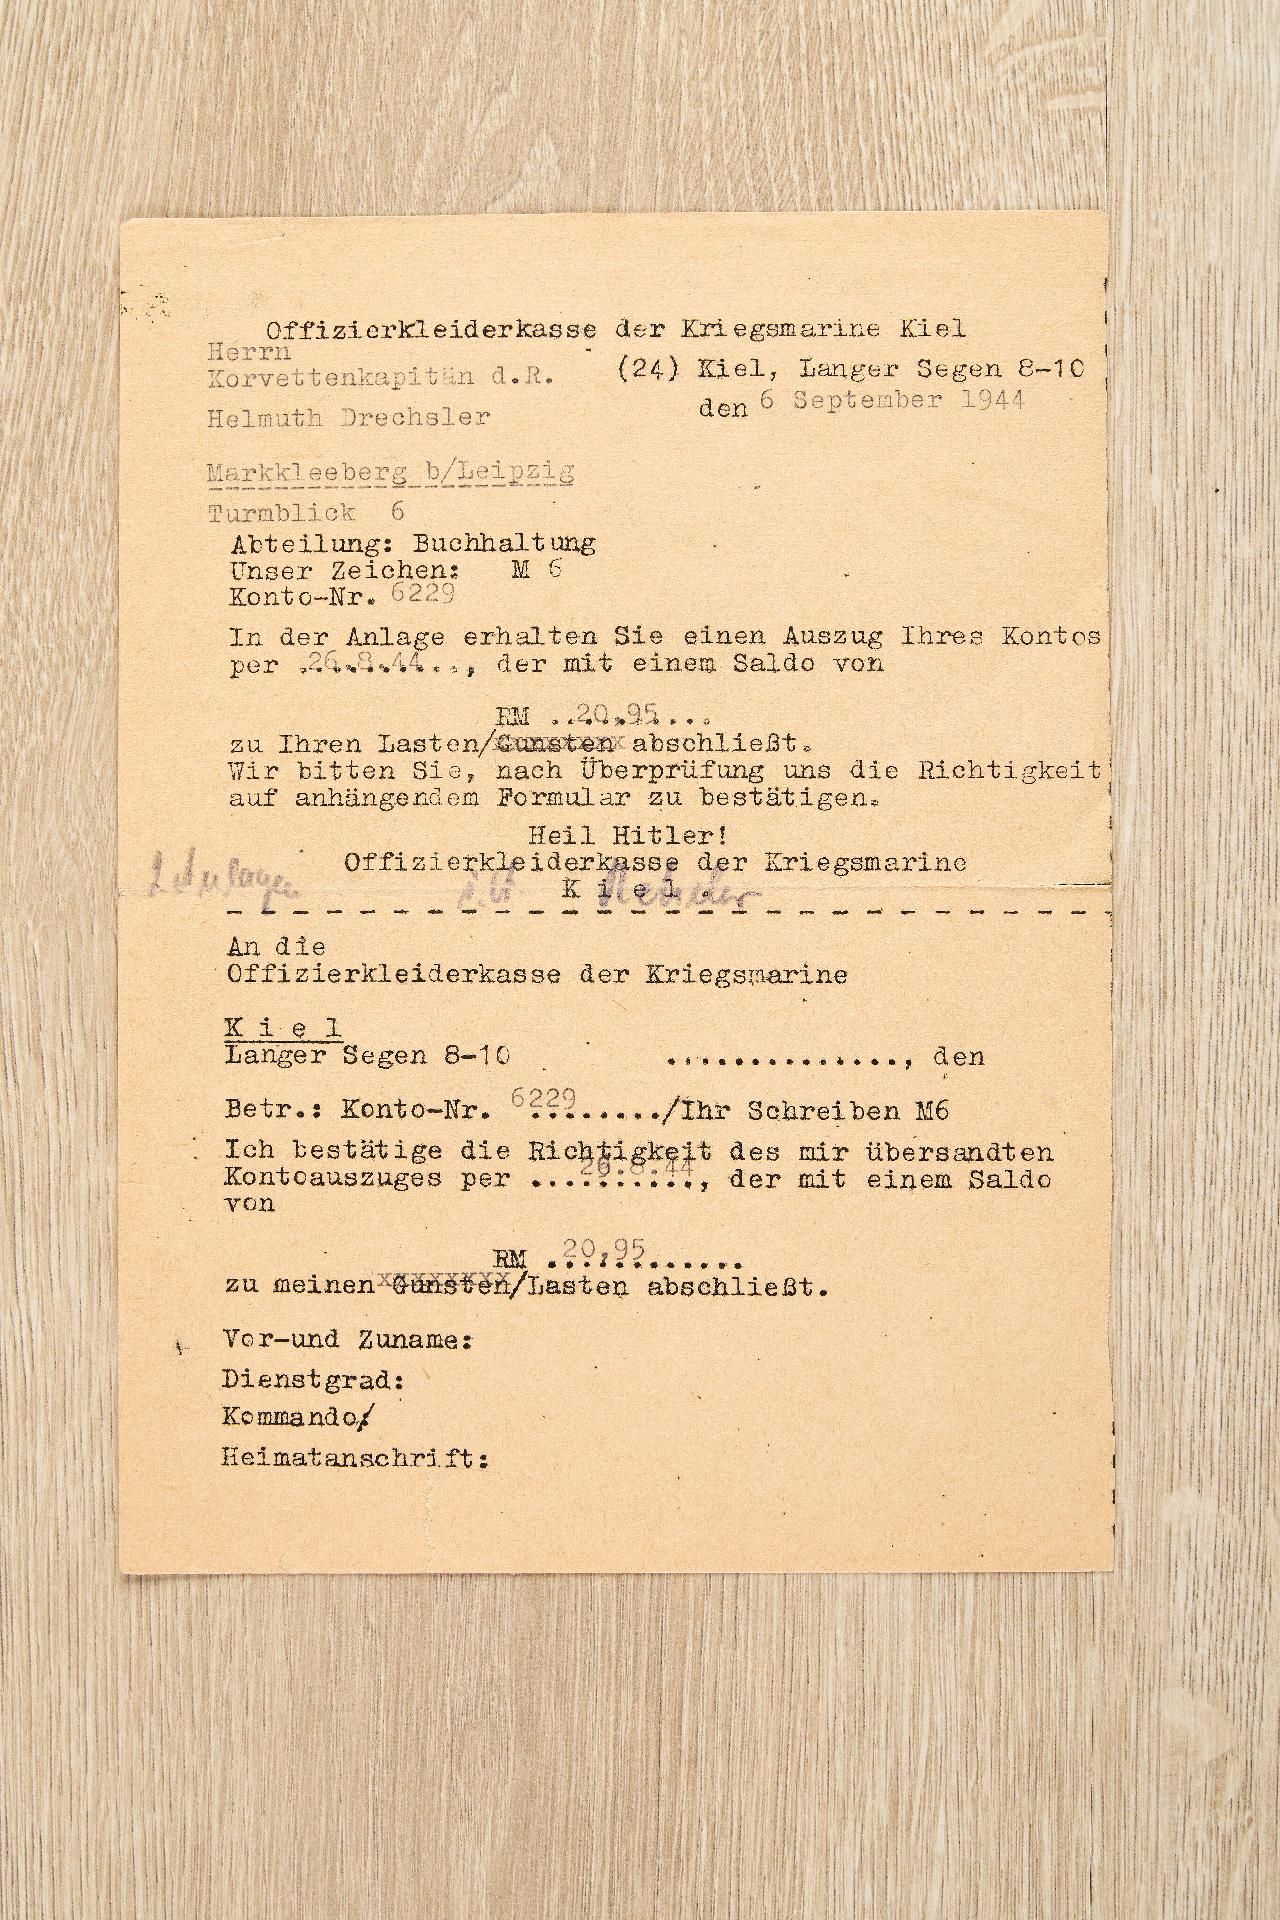 Kriegsmarine : Auszeichnungs- und Dokumentennachlass des Korvettenkapitäns Helmut Drechsler - Image 23 of 28